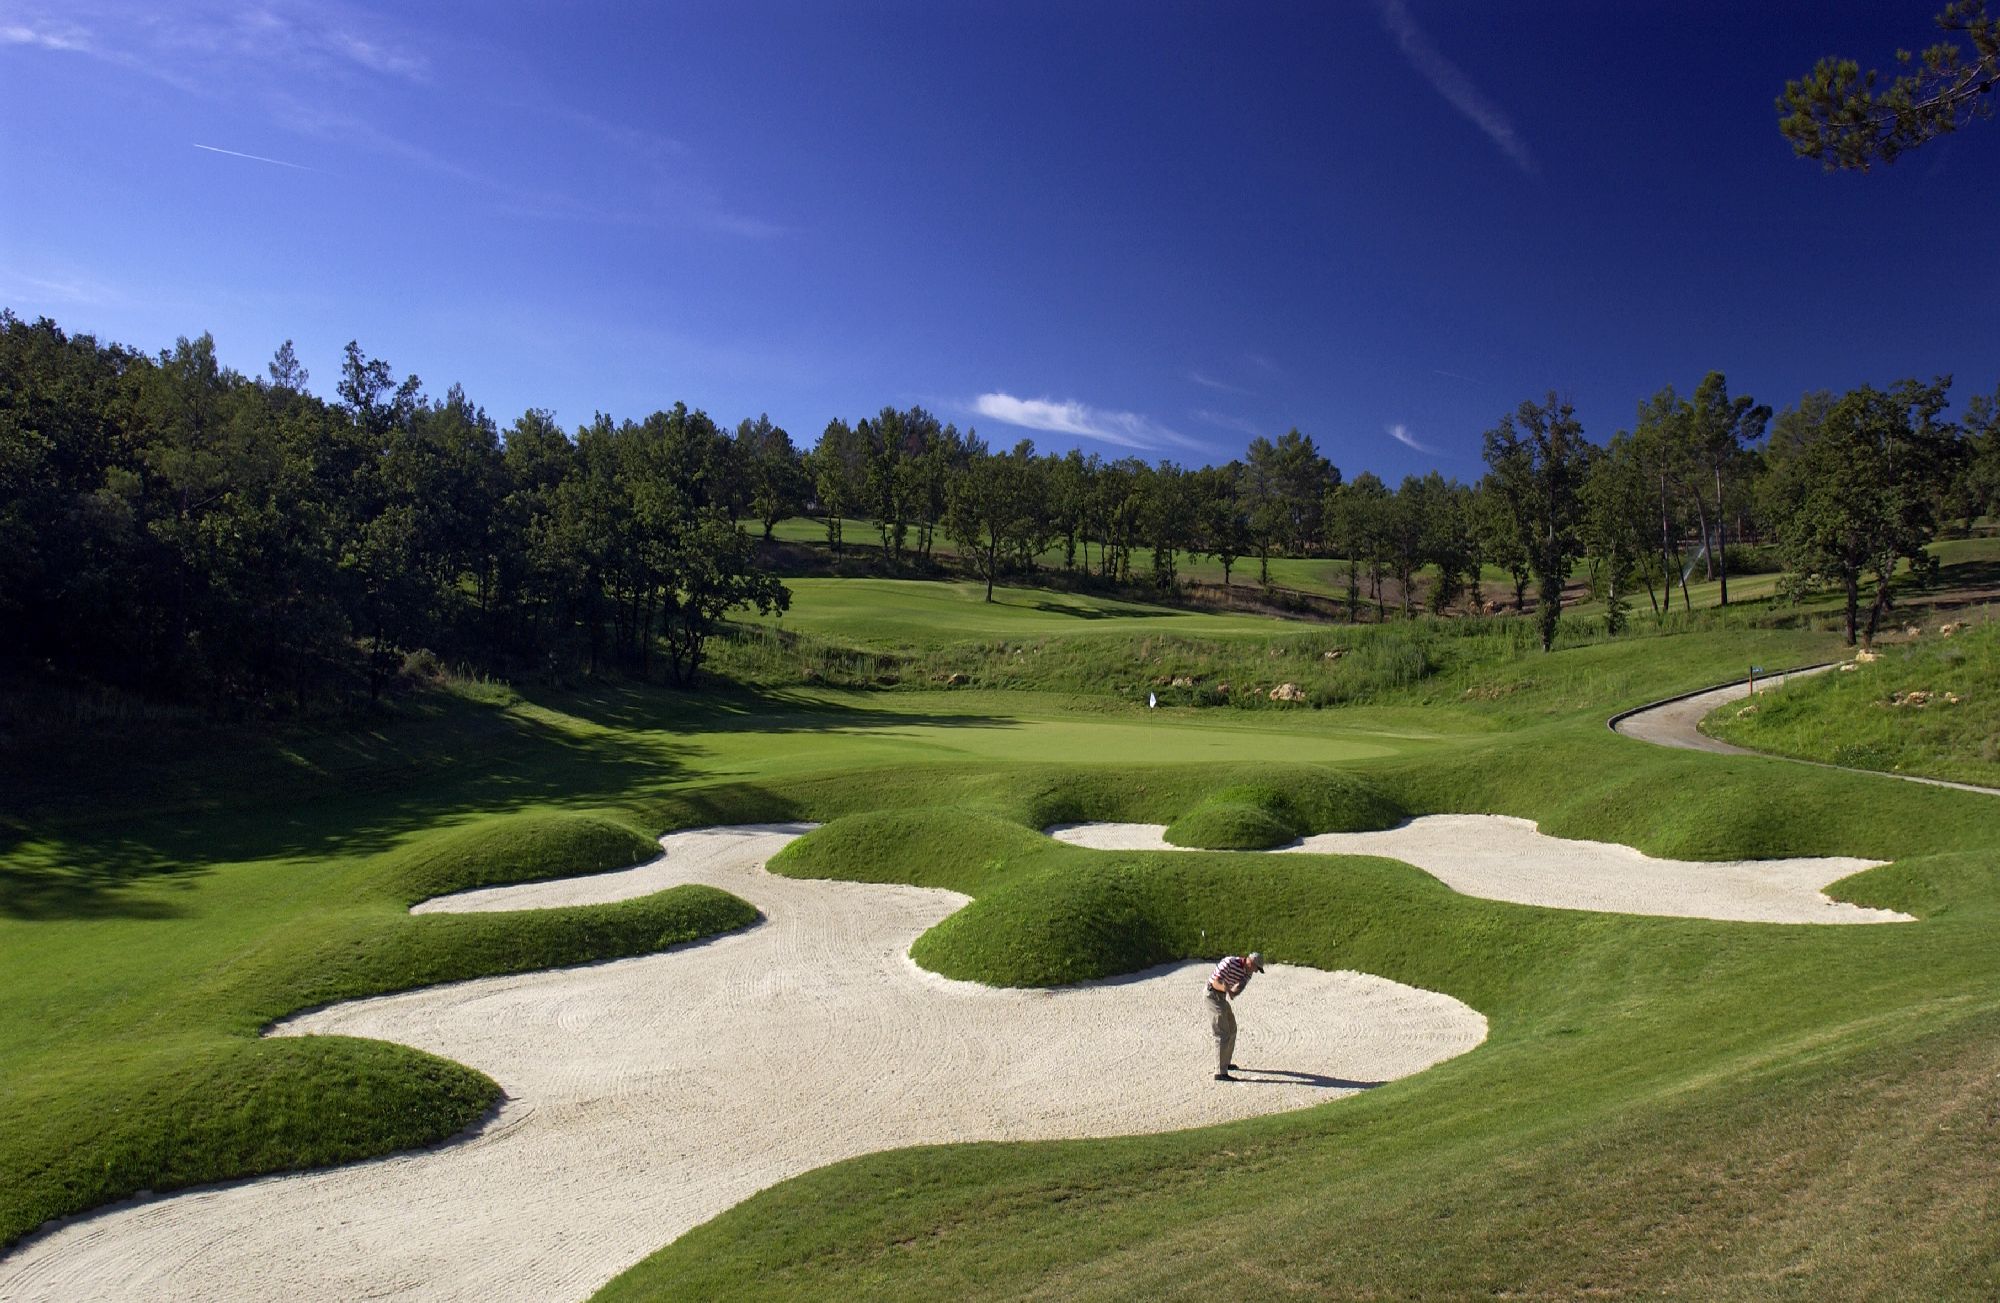 golf-expedition-golf-reizen-frankrijk-regio-cote-d'azur-terre-blanche-hotel-golfbaan-met-bunkers-en-golfer